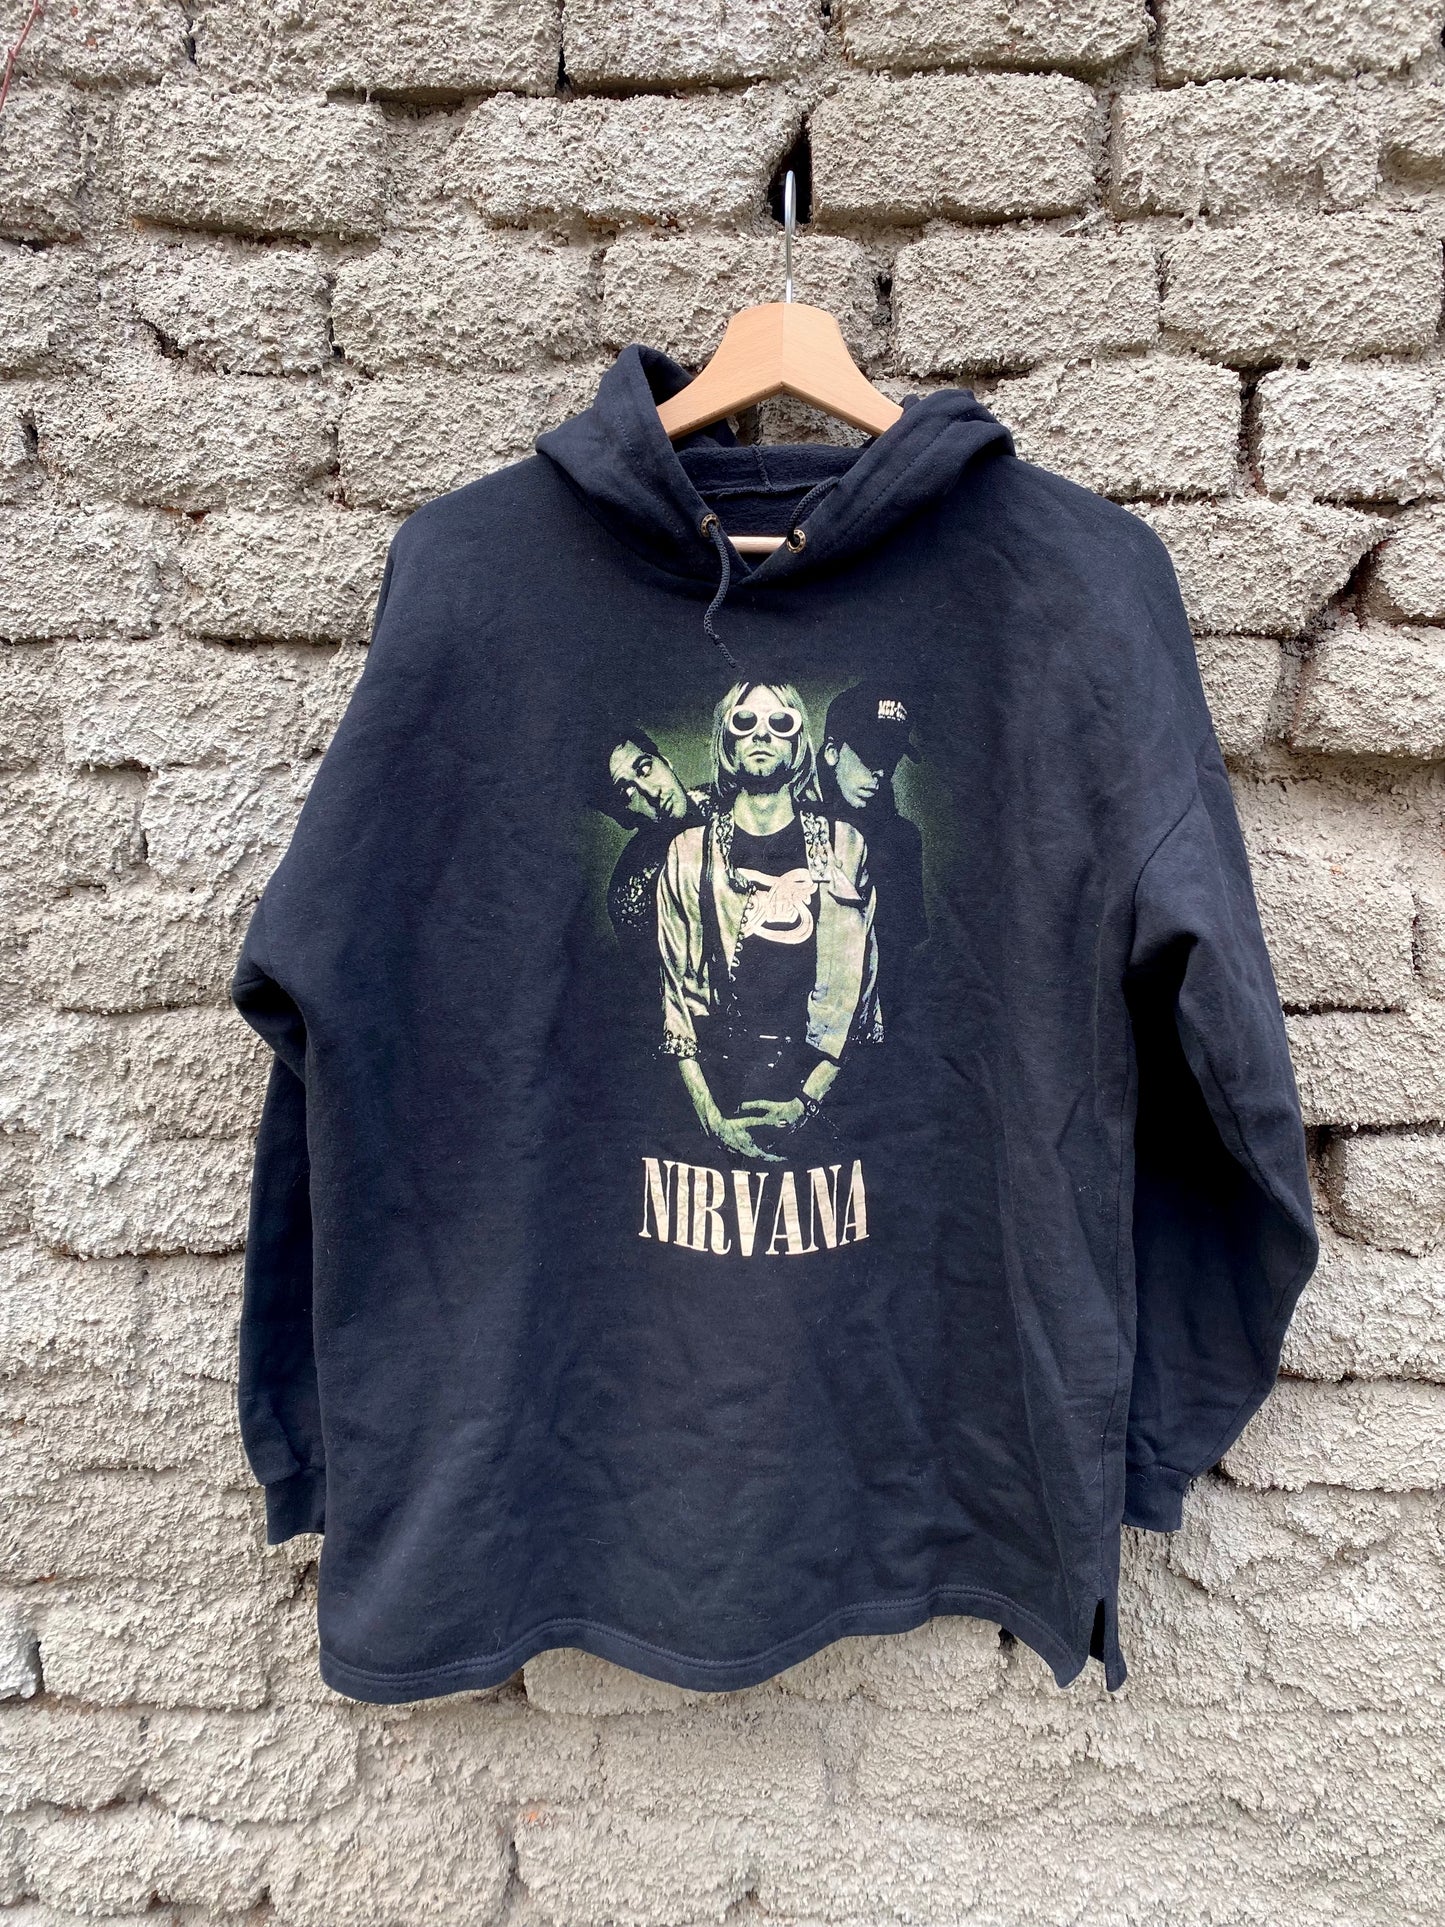 Vintage Nirvana hoodie - size M